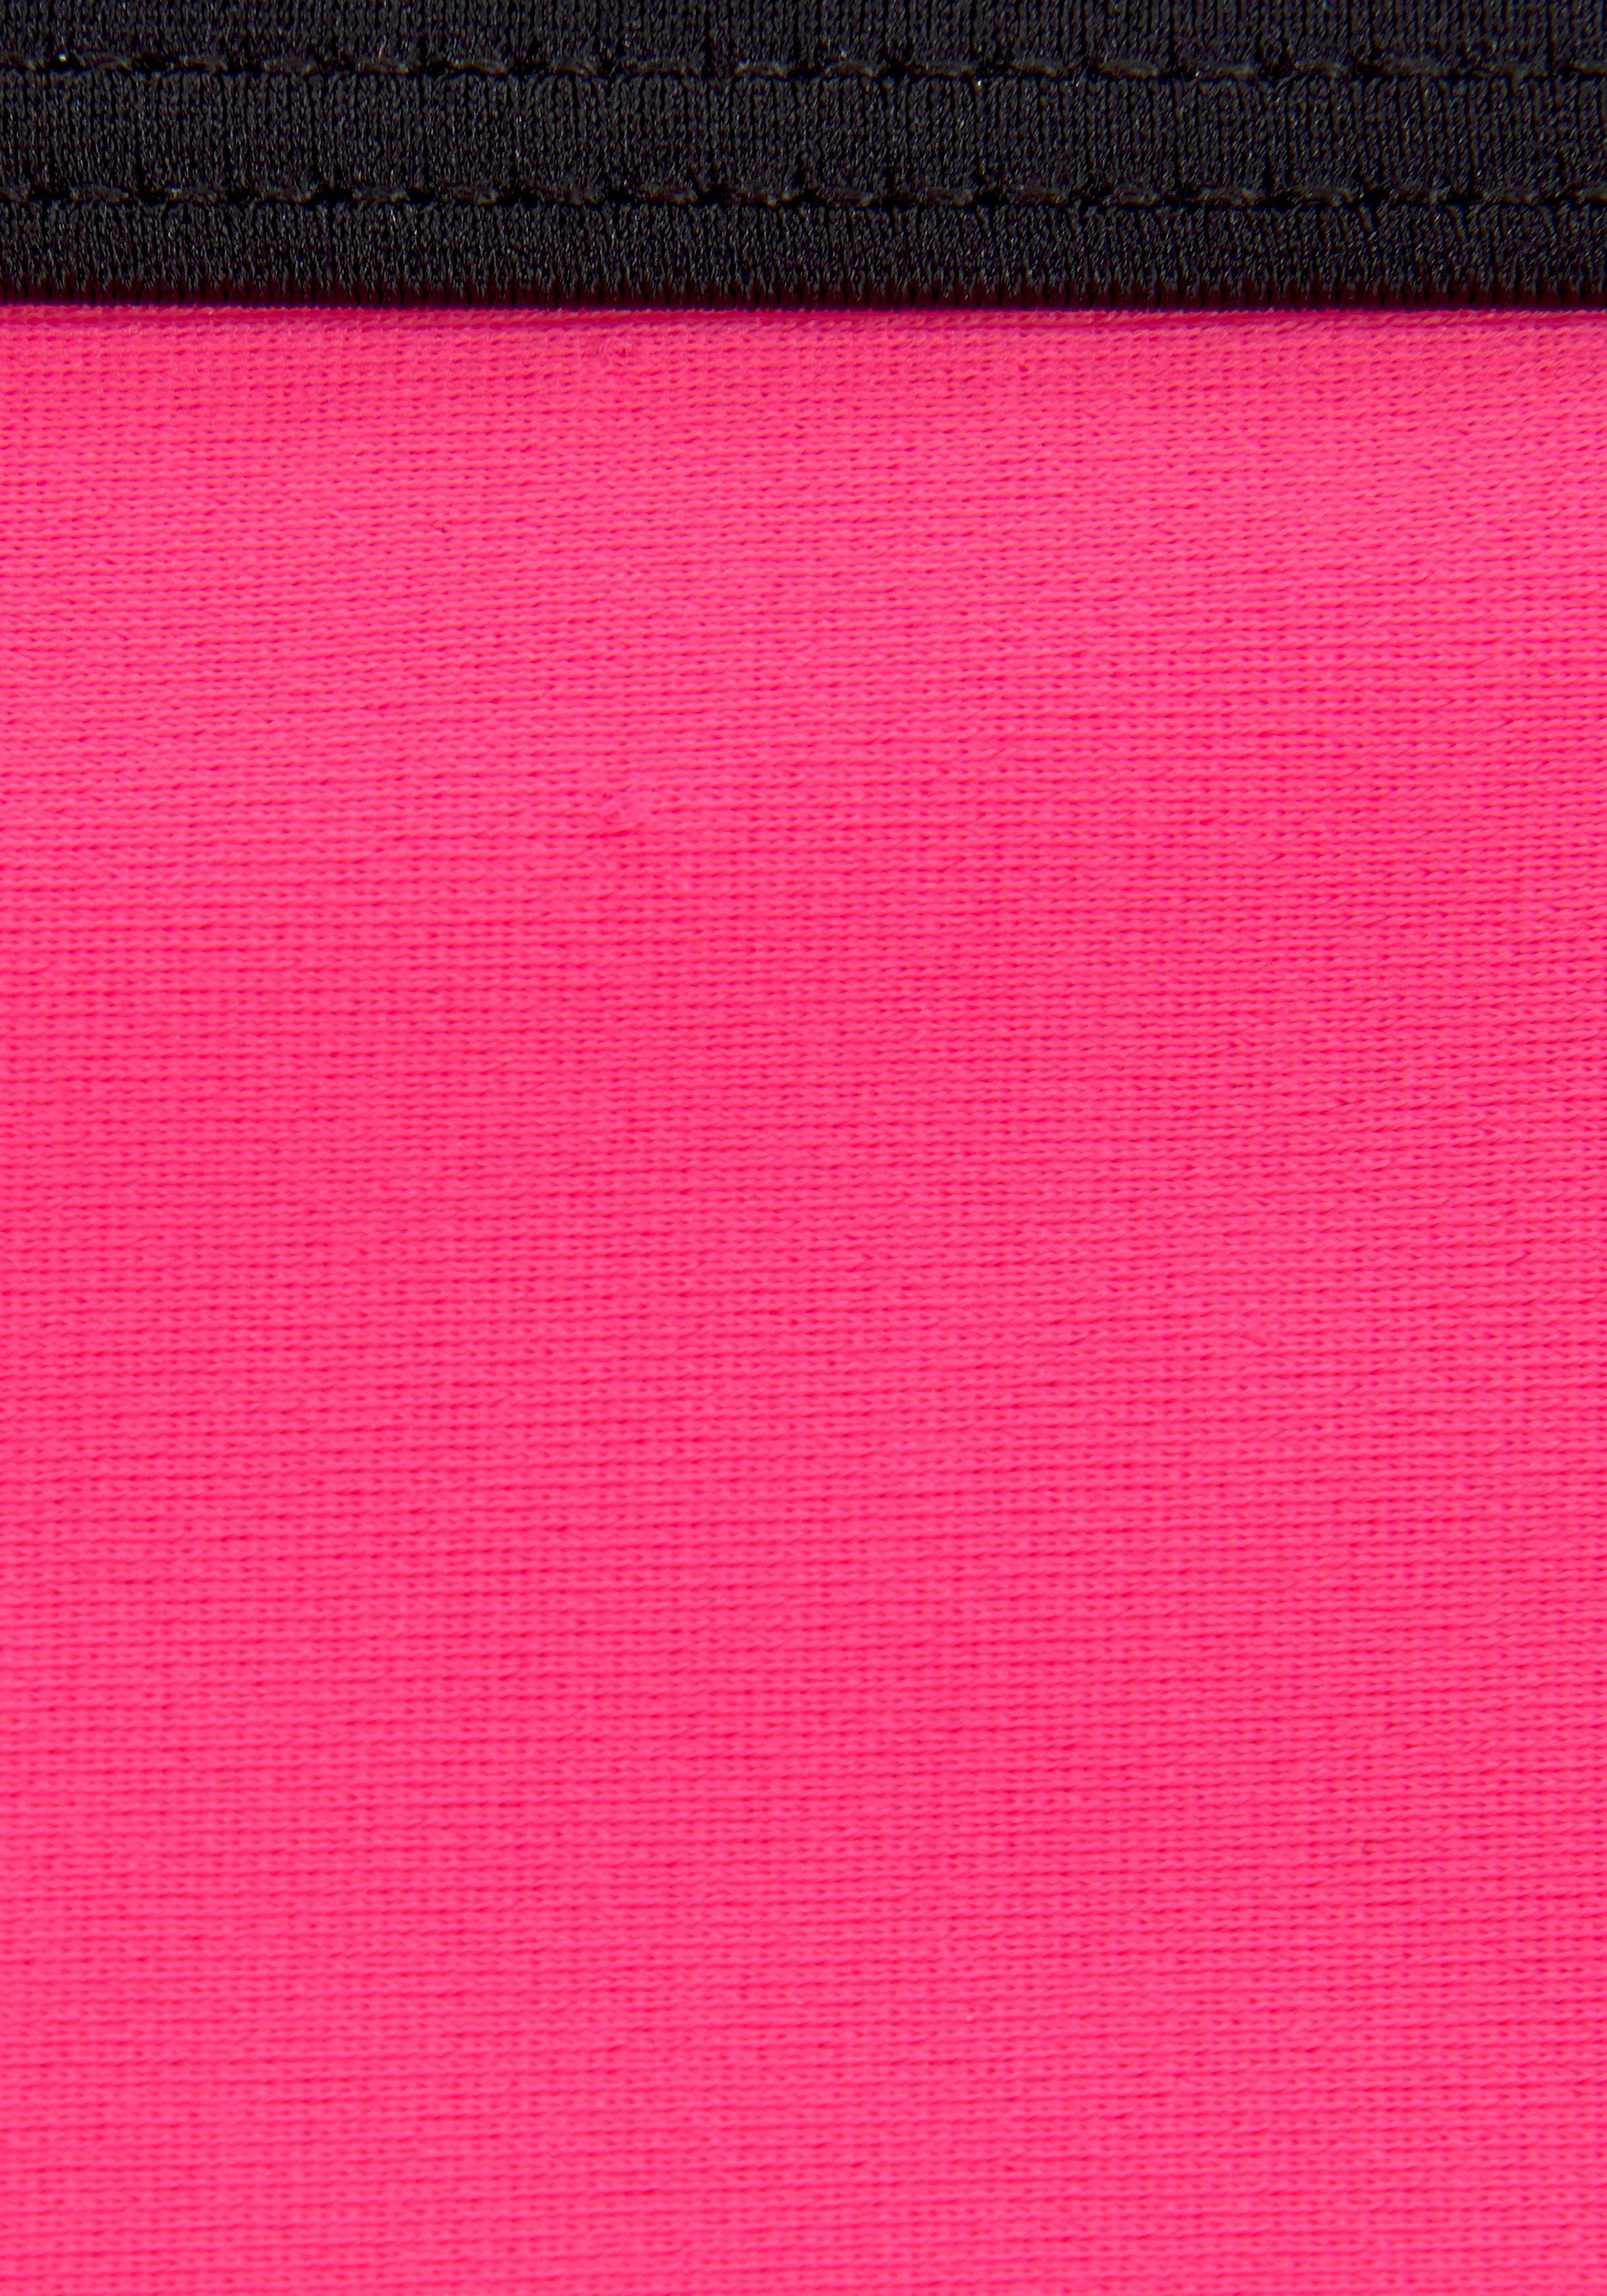 pink-schwarz an mit Top Hose Triangel-Bikini Logoprint und Bench.